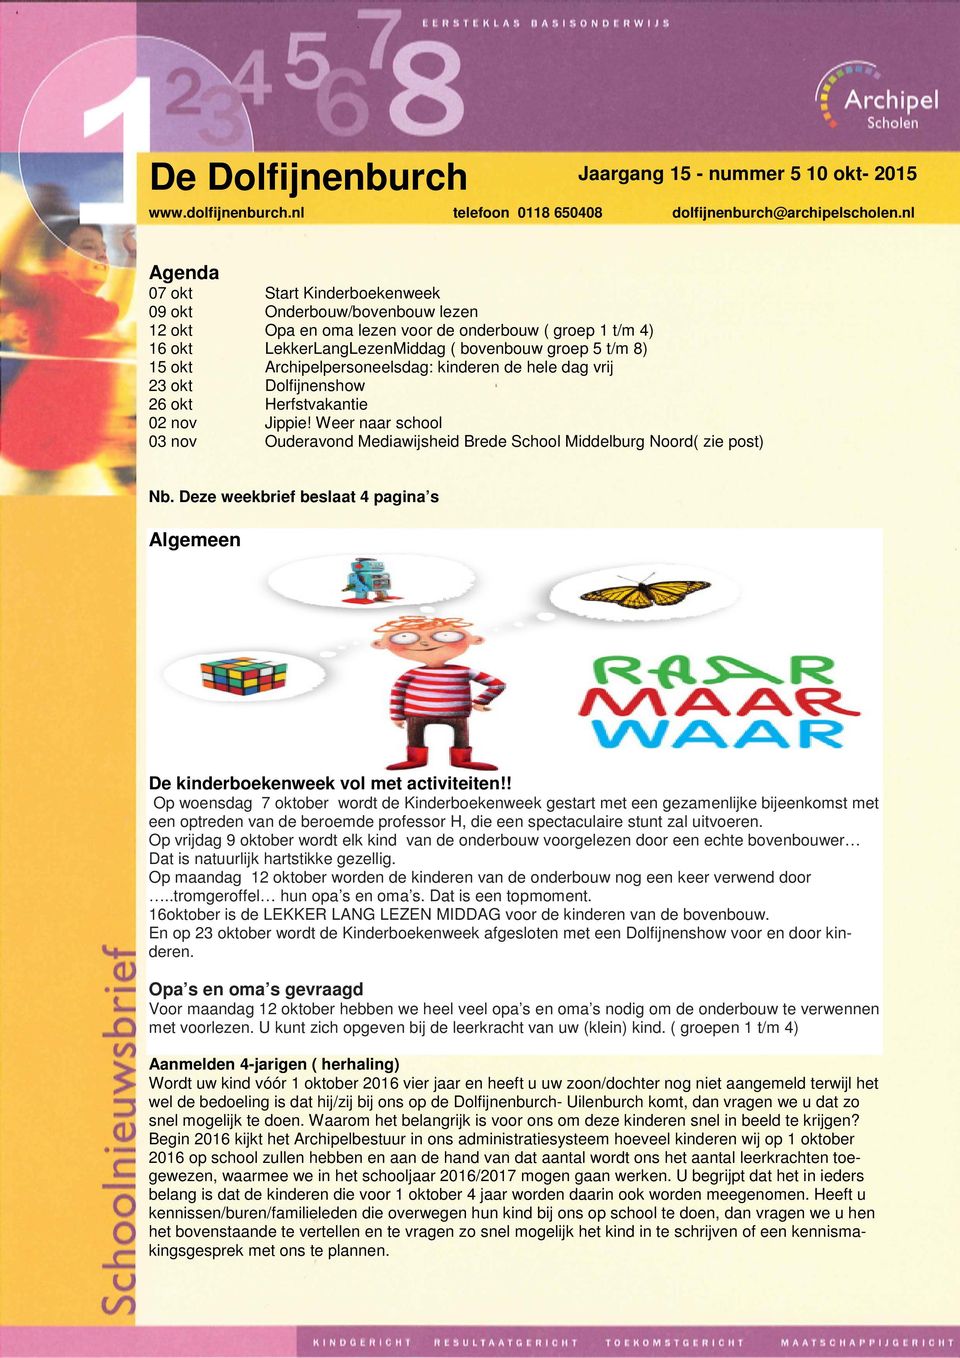 Weer naar school 03 nov Ouderavond Mediawijsheid Brede School Middelburg Noord( zie post) Nb. Deze weekbrief beslaat 4 pagina s Algemeen De kinderboekenweek vol met activiteiten!